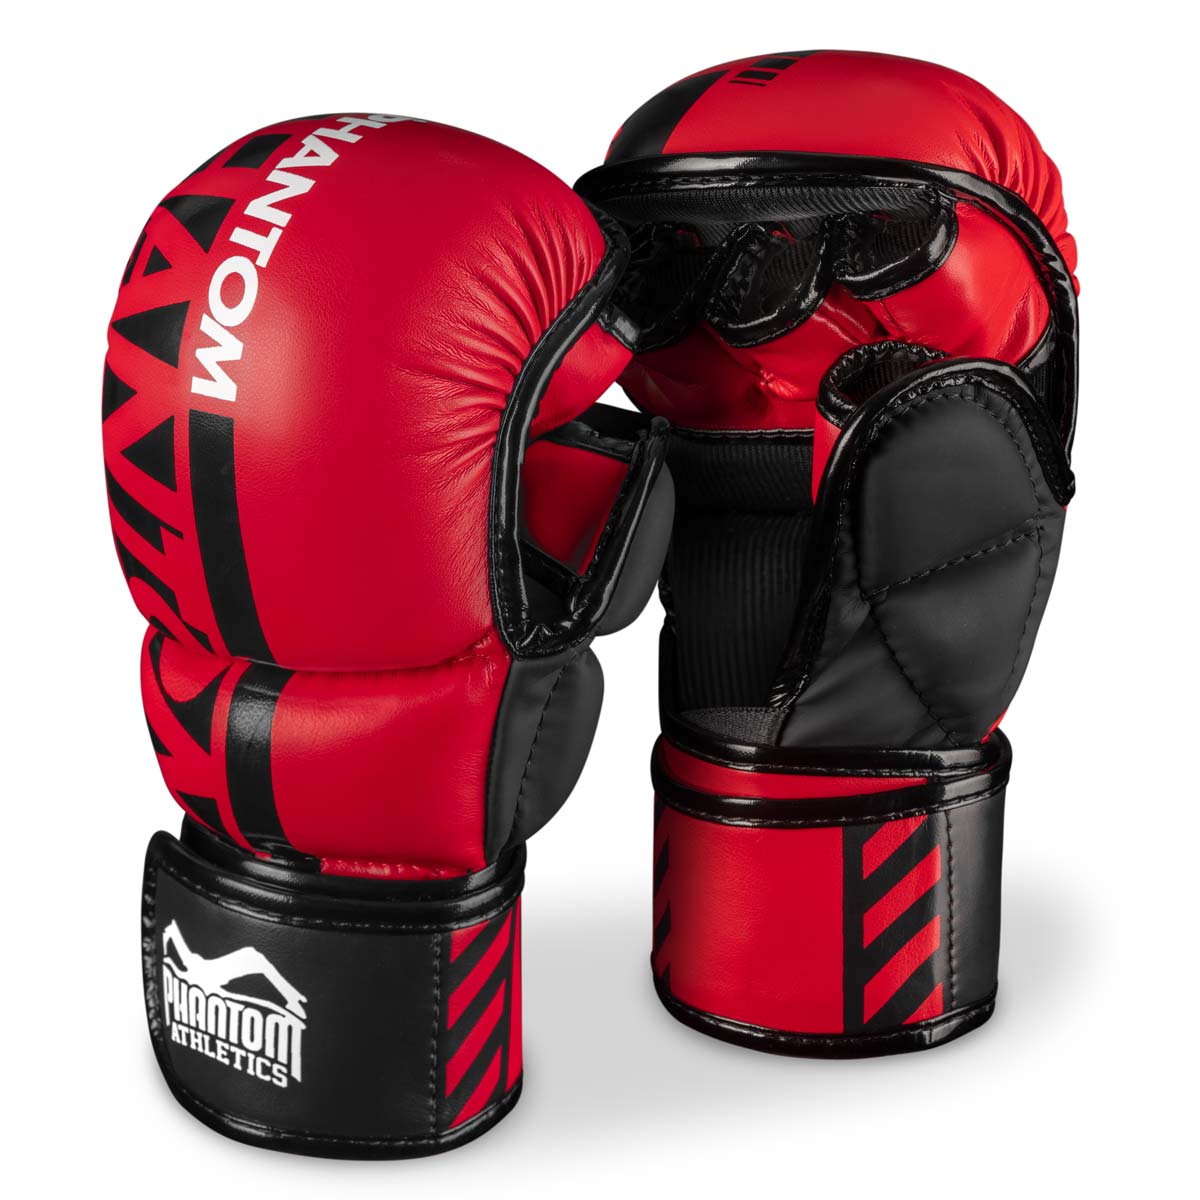 De Phantom MMA-sparringhandschoenen. De veiligste handschoen voor jouw vechtsporttraining. Nu in de beperkte rode kleur.